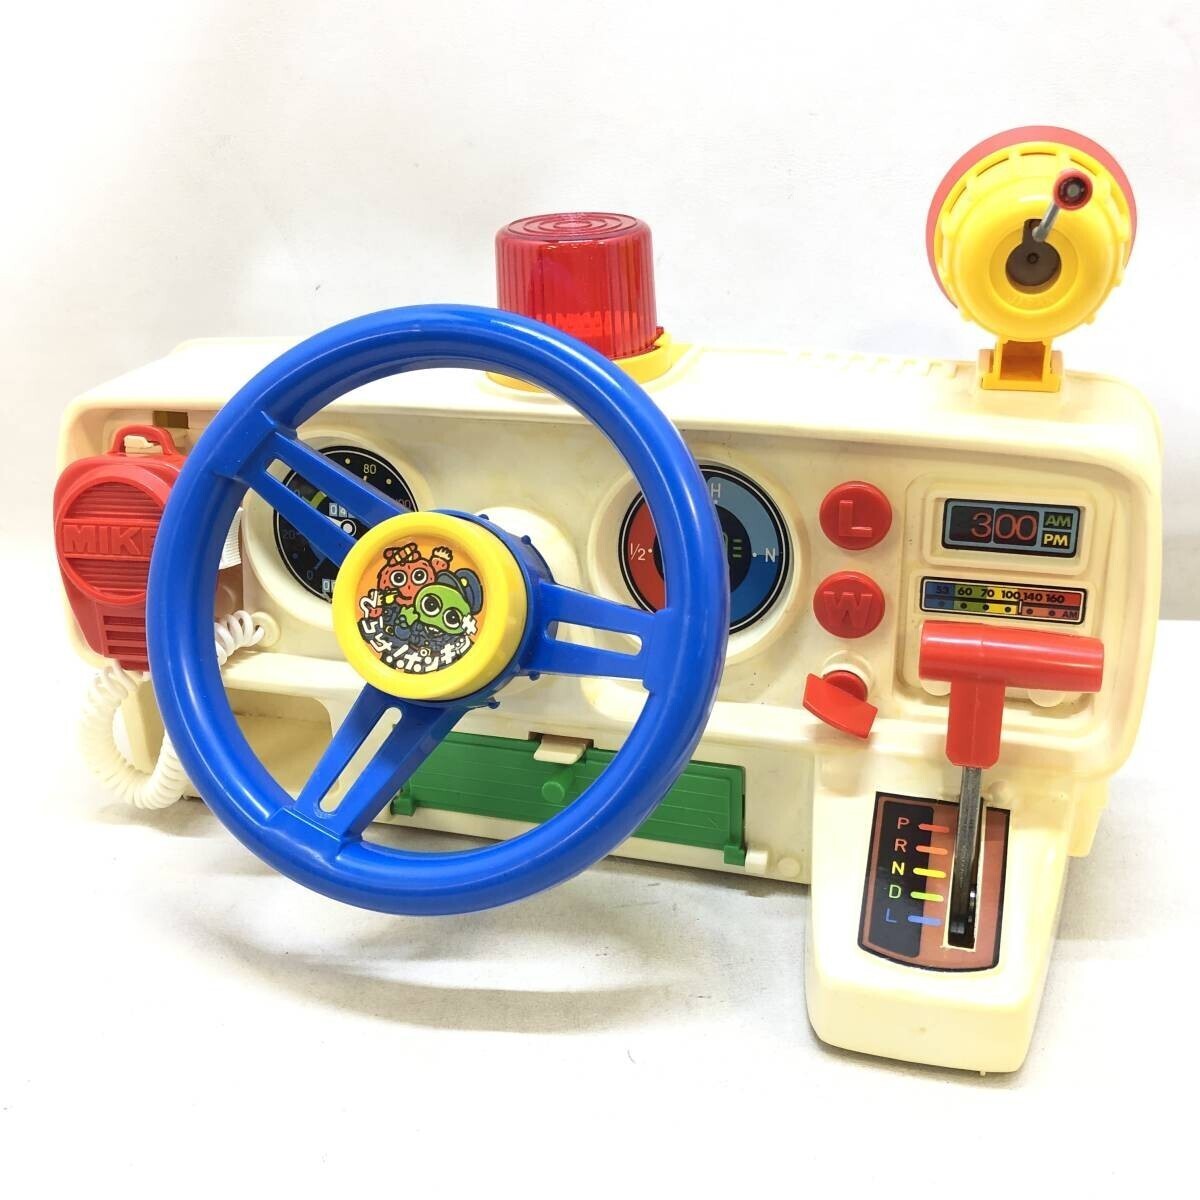 ♪ひらけ！ポンキッキ いそげ！ガチャピンパトカー ムック 昭和レトロ 車 運転 玩具 おもちゃ 当時物 箱付き 中古品♪N20175の画像2